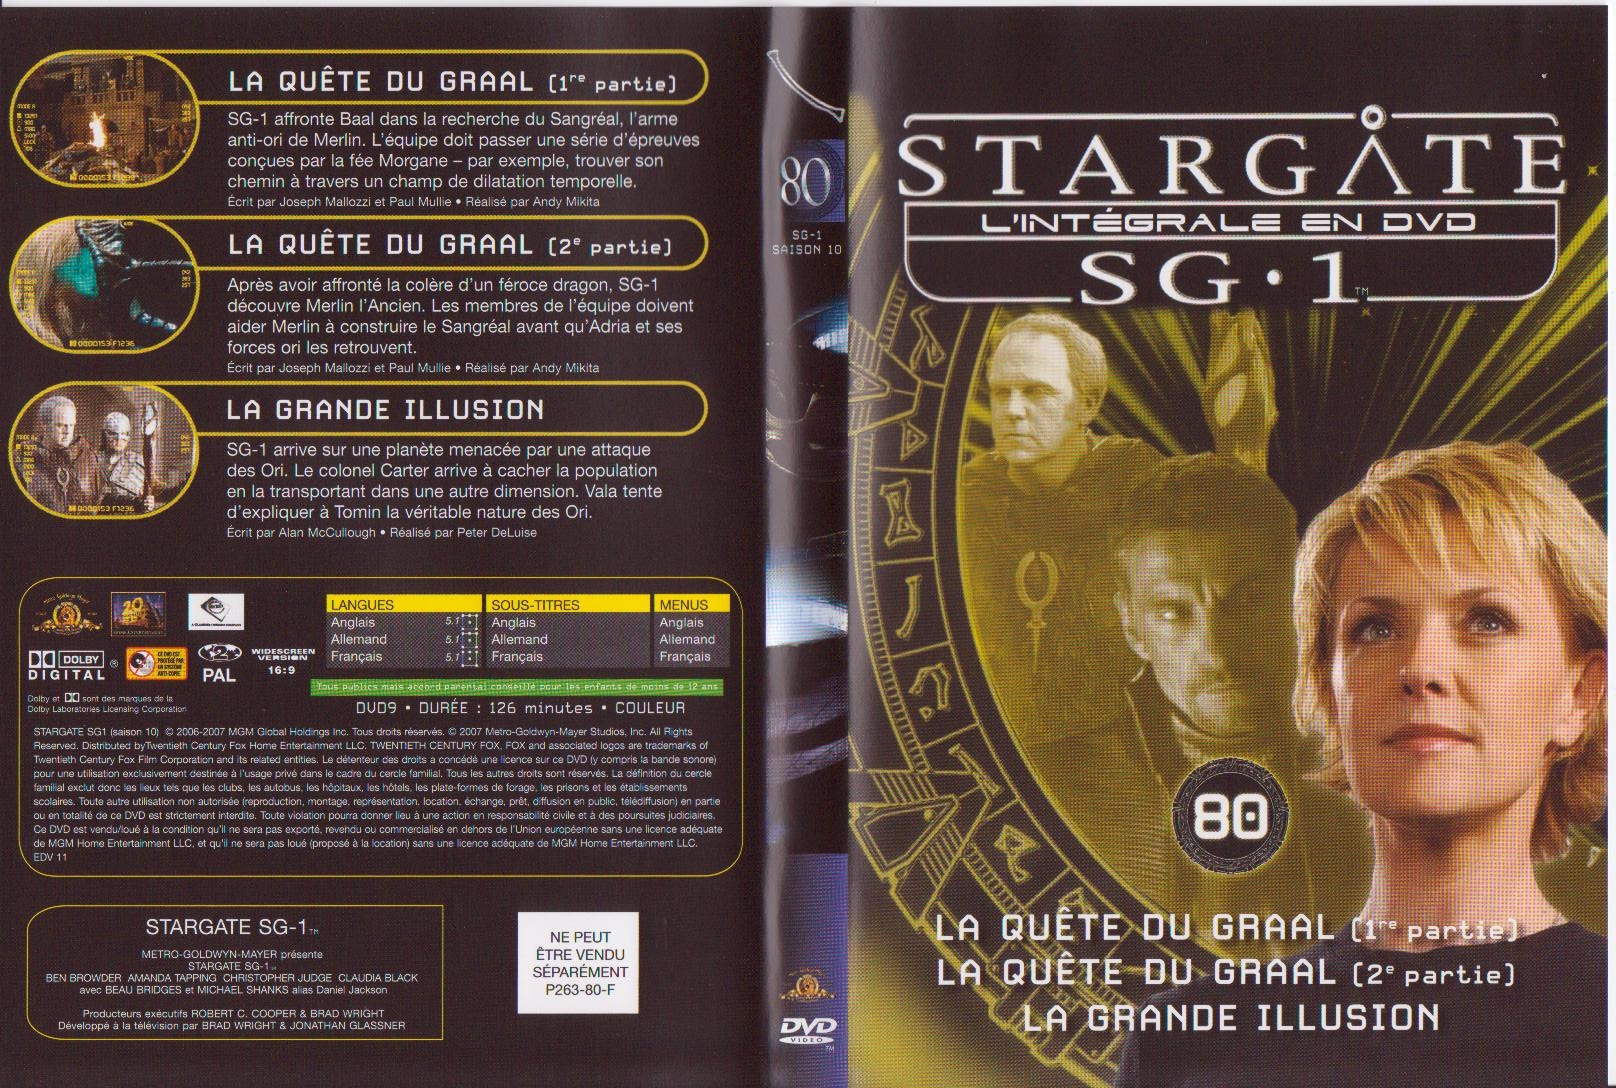 Jaquette DVD Stargate Saison 10 vol 80